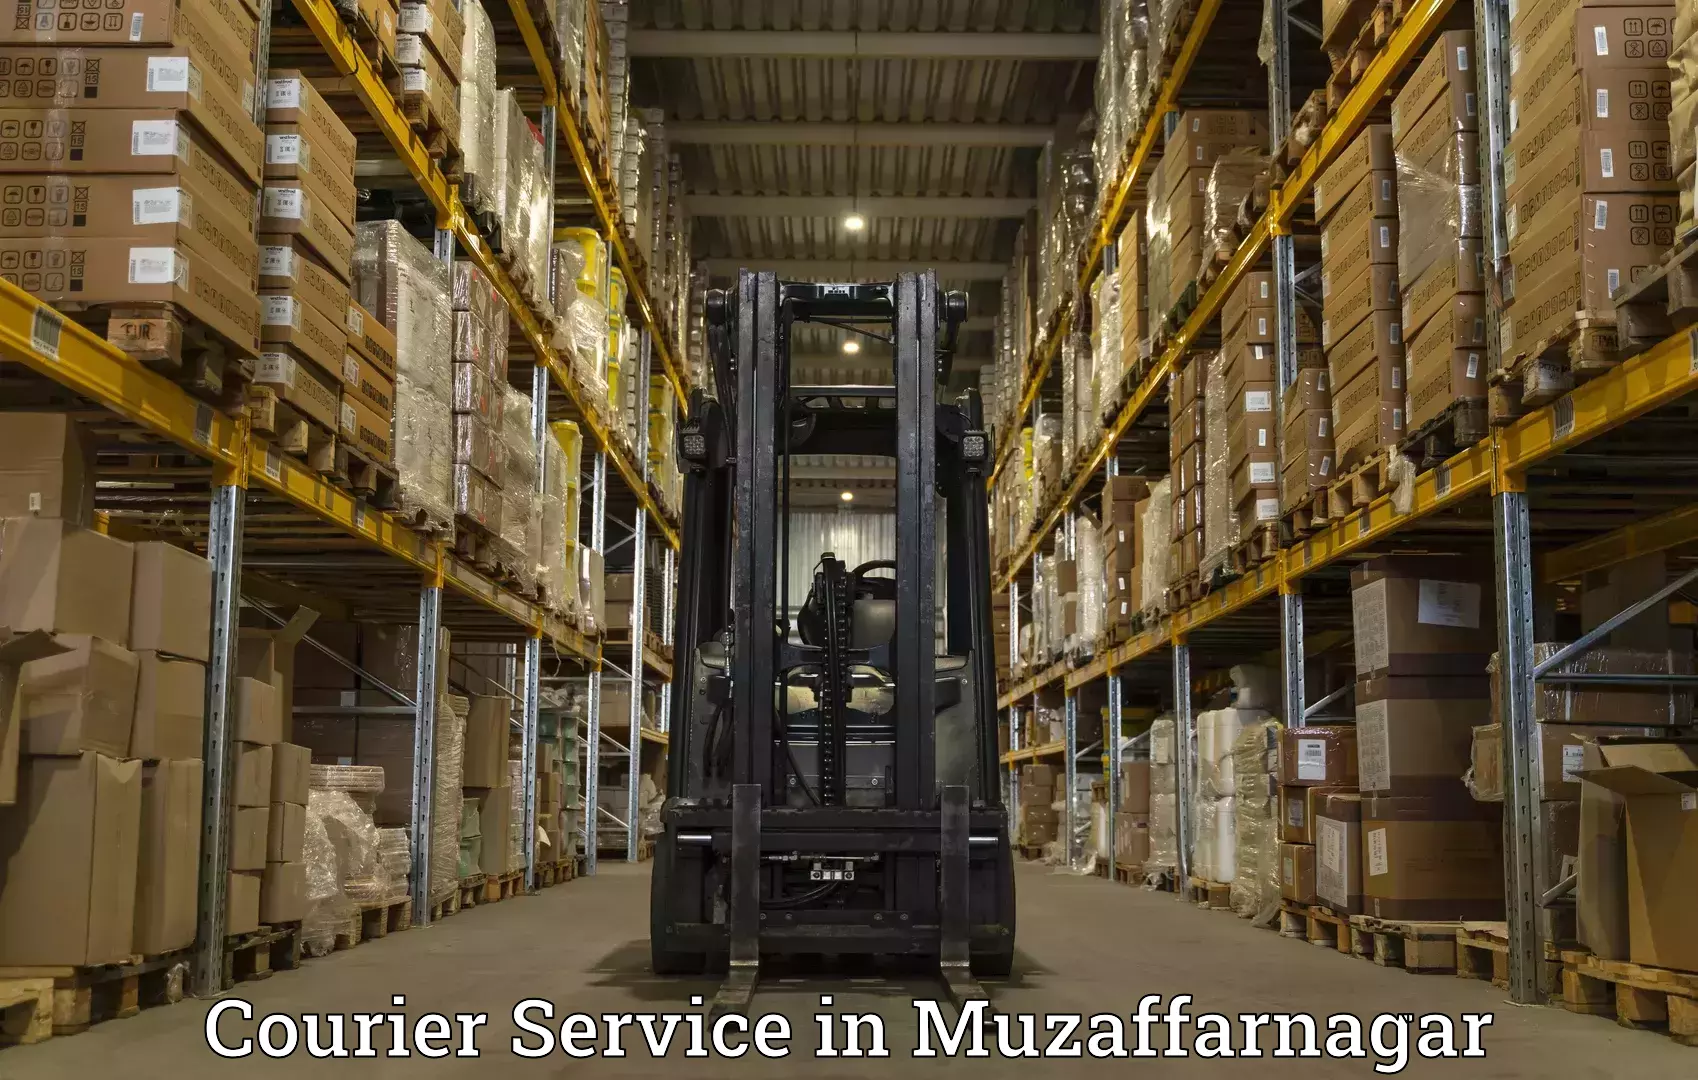 Advanced courier platforms in Muzaffarnagar